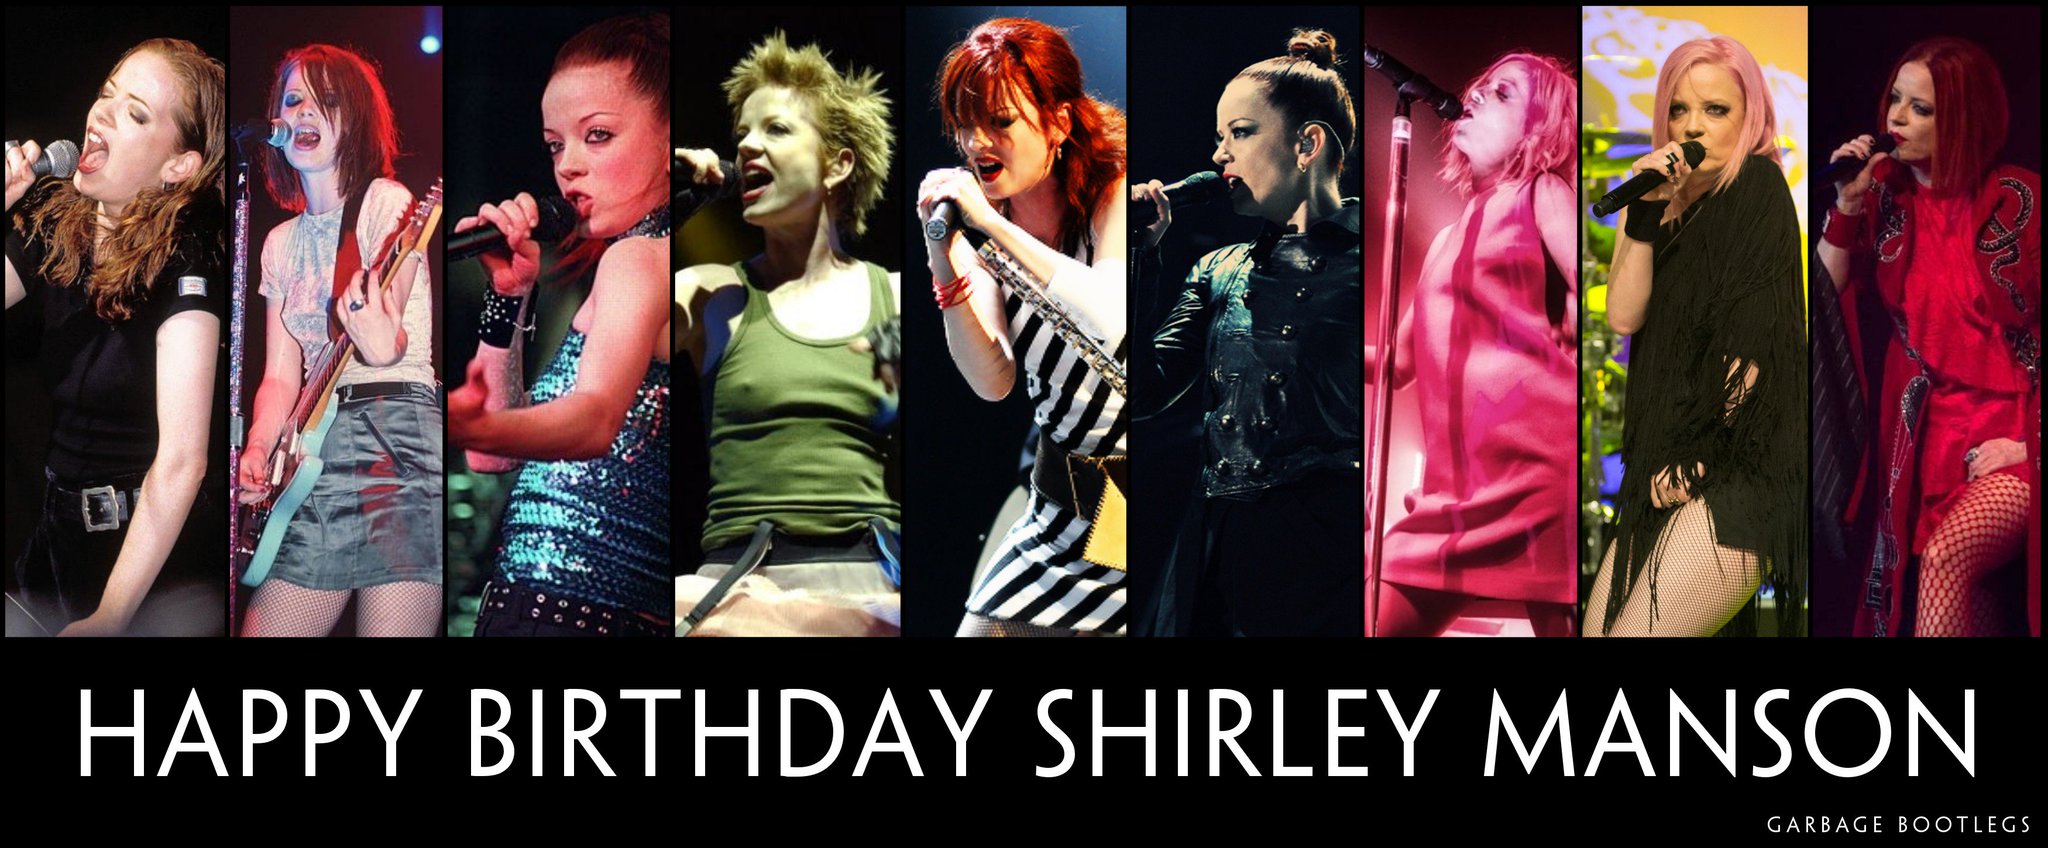 Happy birthday dear Shirley Manson  